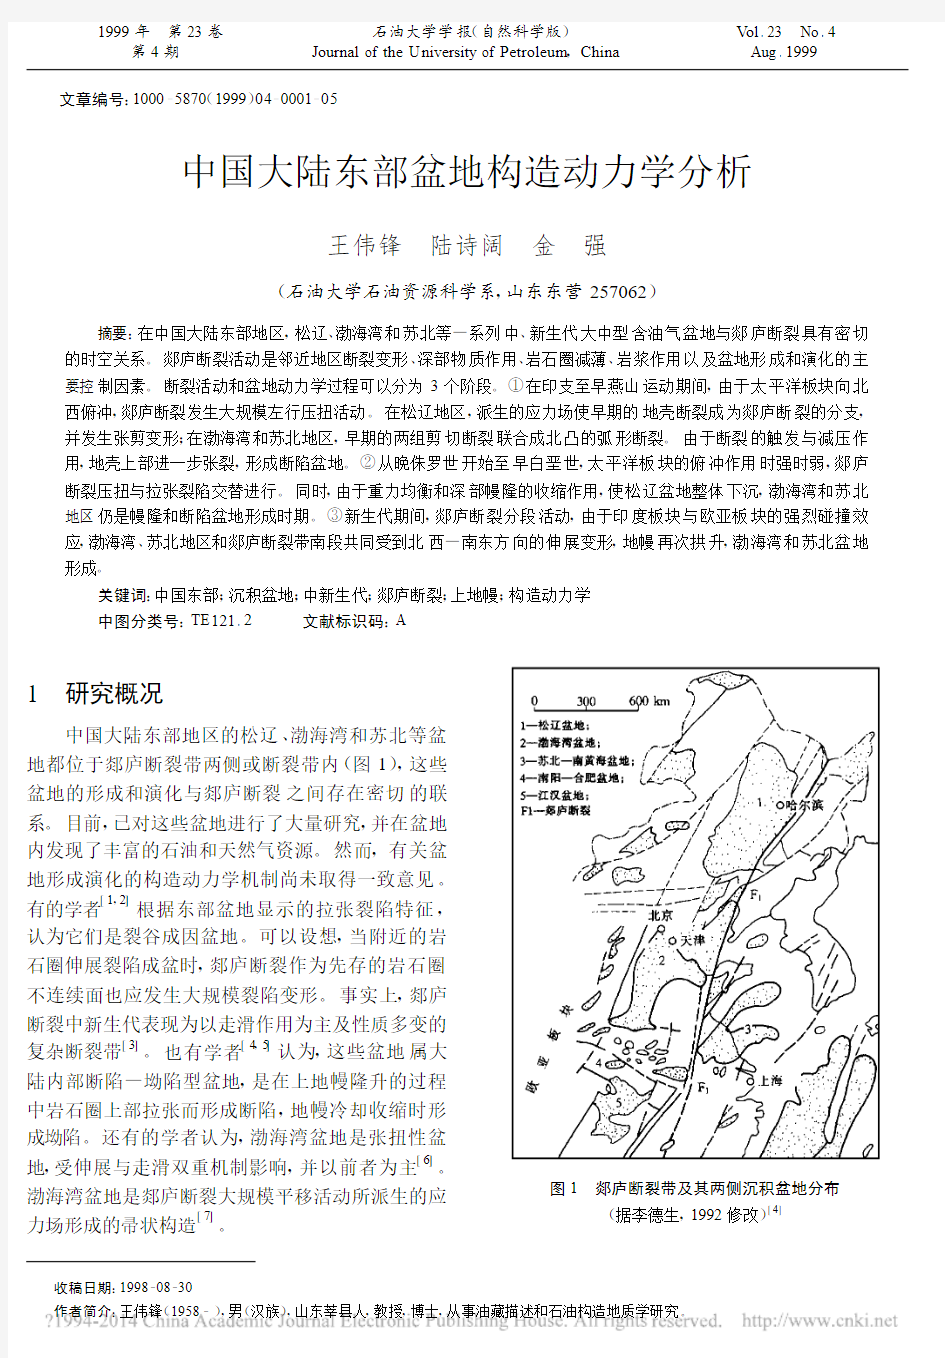 中国大陆东部盆地构造动力学分析_王伟锋